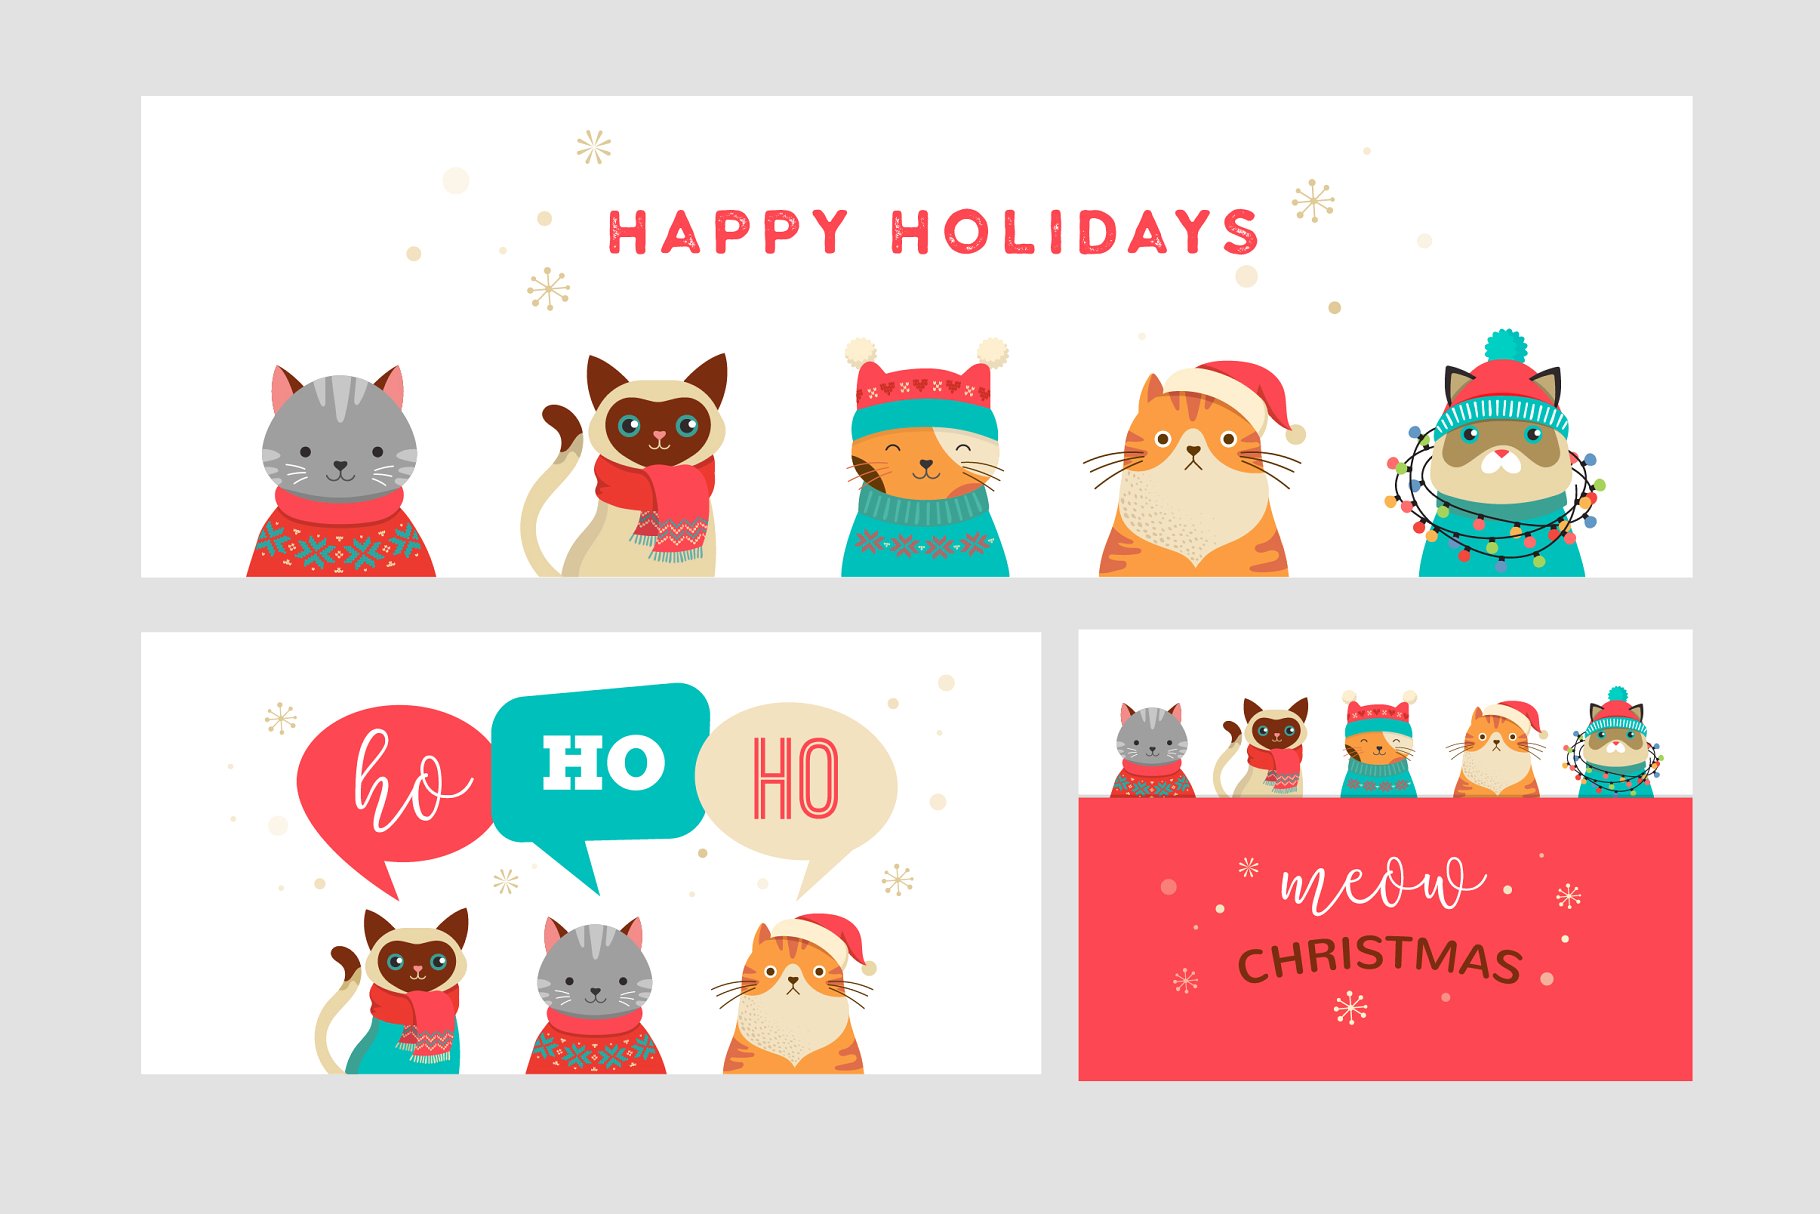 可爱的卡通圣诞猫系列手绘剪贴画 Cute Christmas Cats Bundle插图(2)